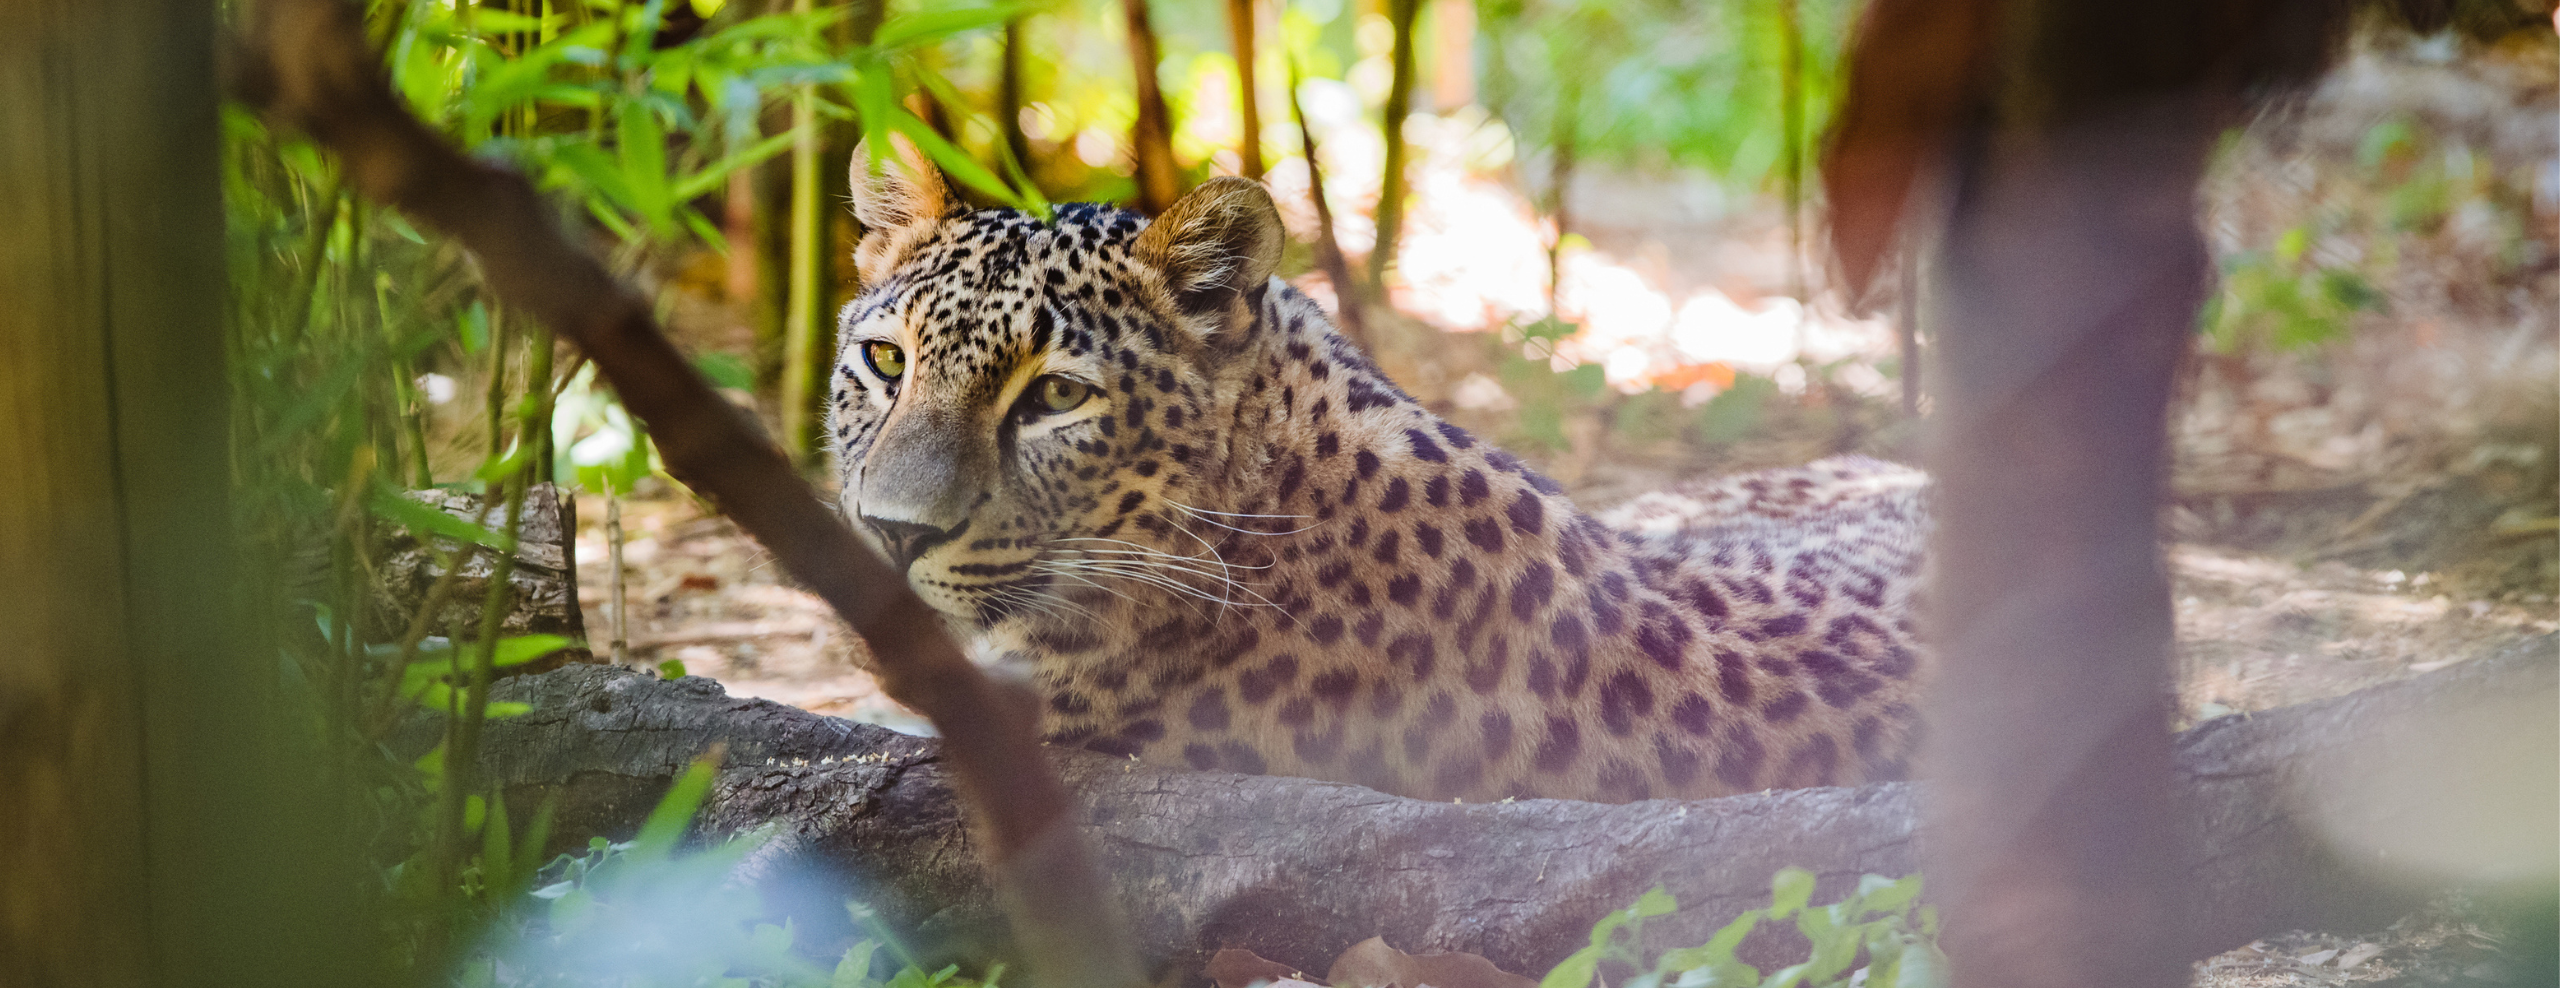 Cas clinique : Bronchopneumopathie éosinophile  chez un léopard persan